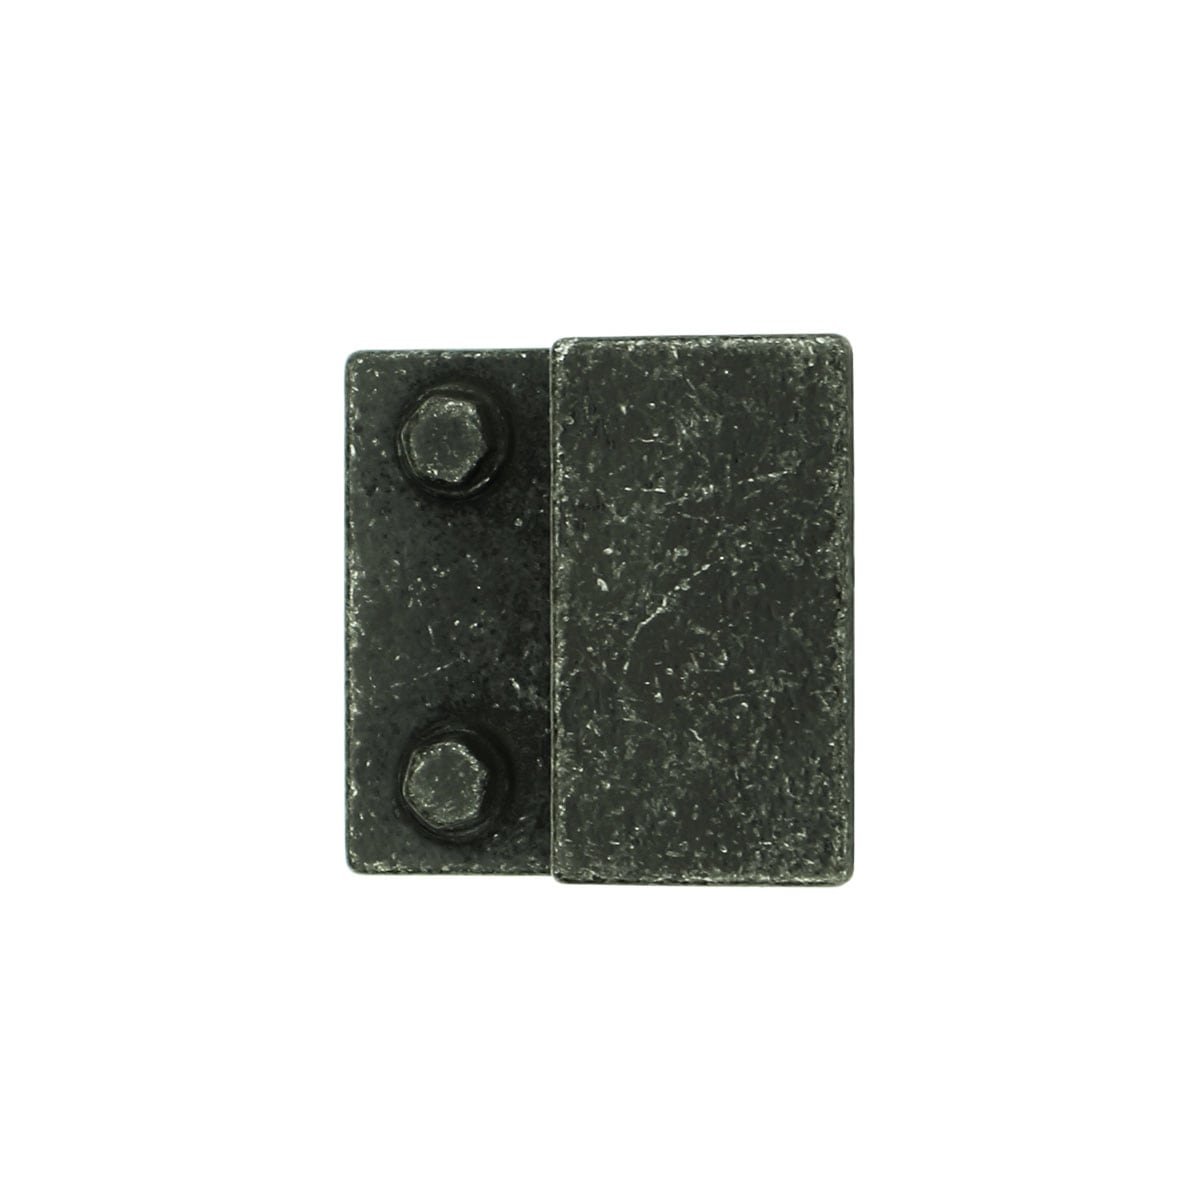 Håndgrep industriel grå Zörbig - 50 mm